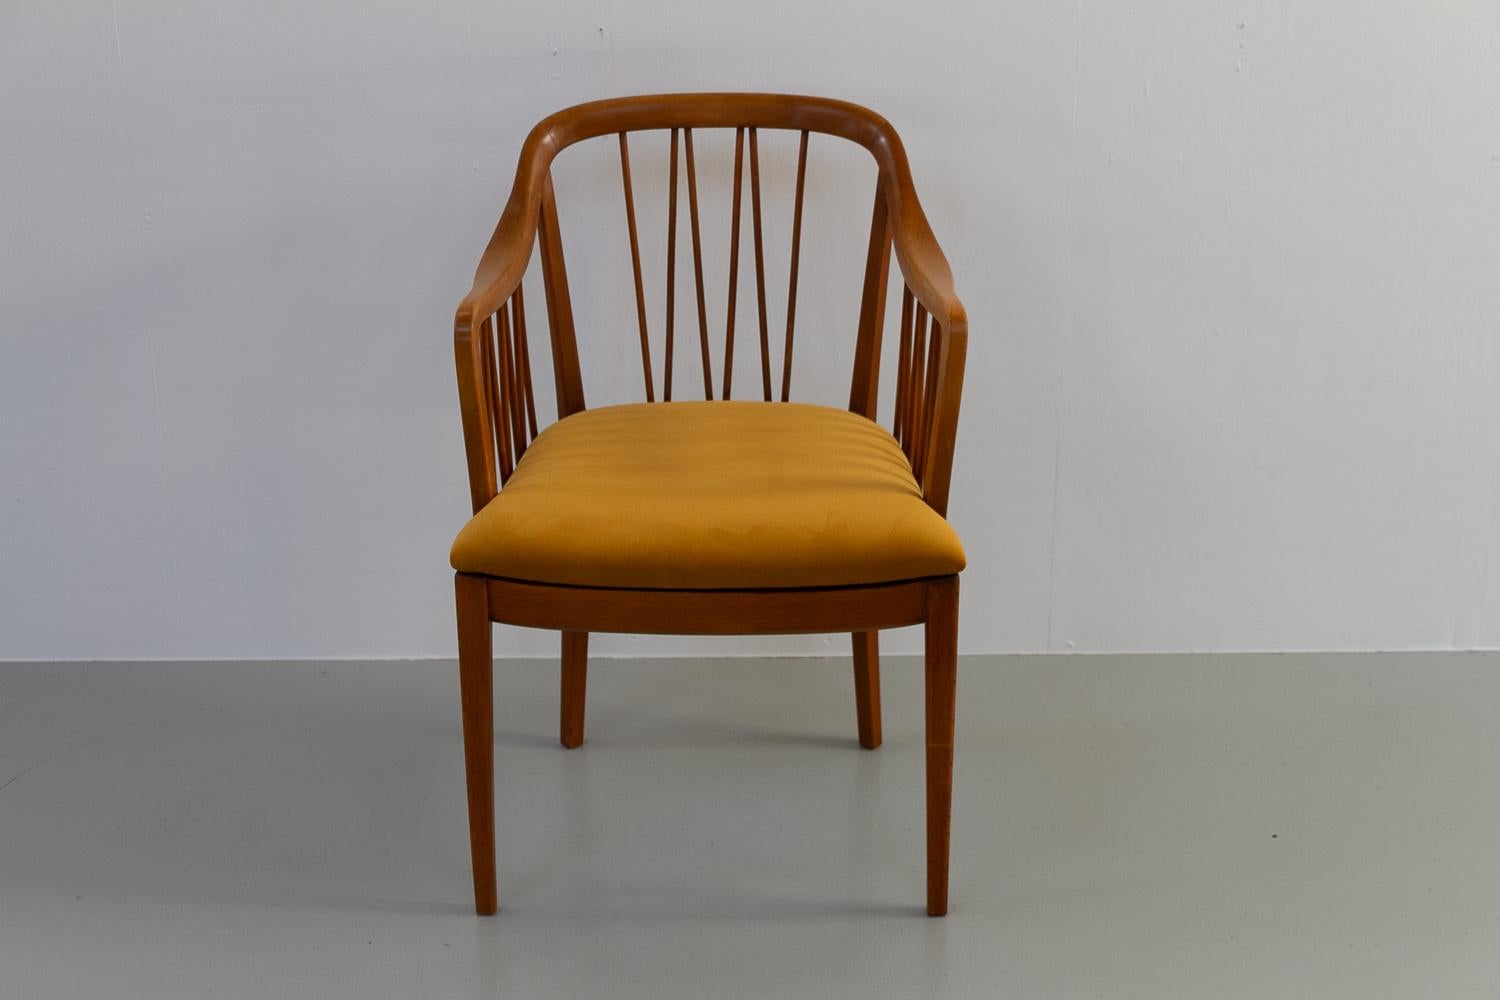 Schwedischer Art déco-Sessel, 1940er-Jahre.

Eleganter skandinavischer Art-Deco-Sessel aus gebeizter und lackierter Buche mit geschwungener Rückenlehne. Der Sitz ist neu mit goldenem Samtstoff bezogen.
Hergestellt in Schweden von einem unbekannten